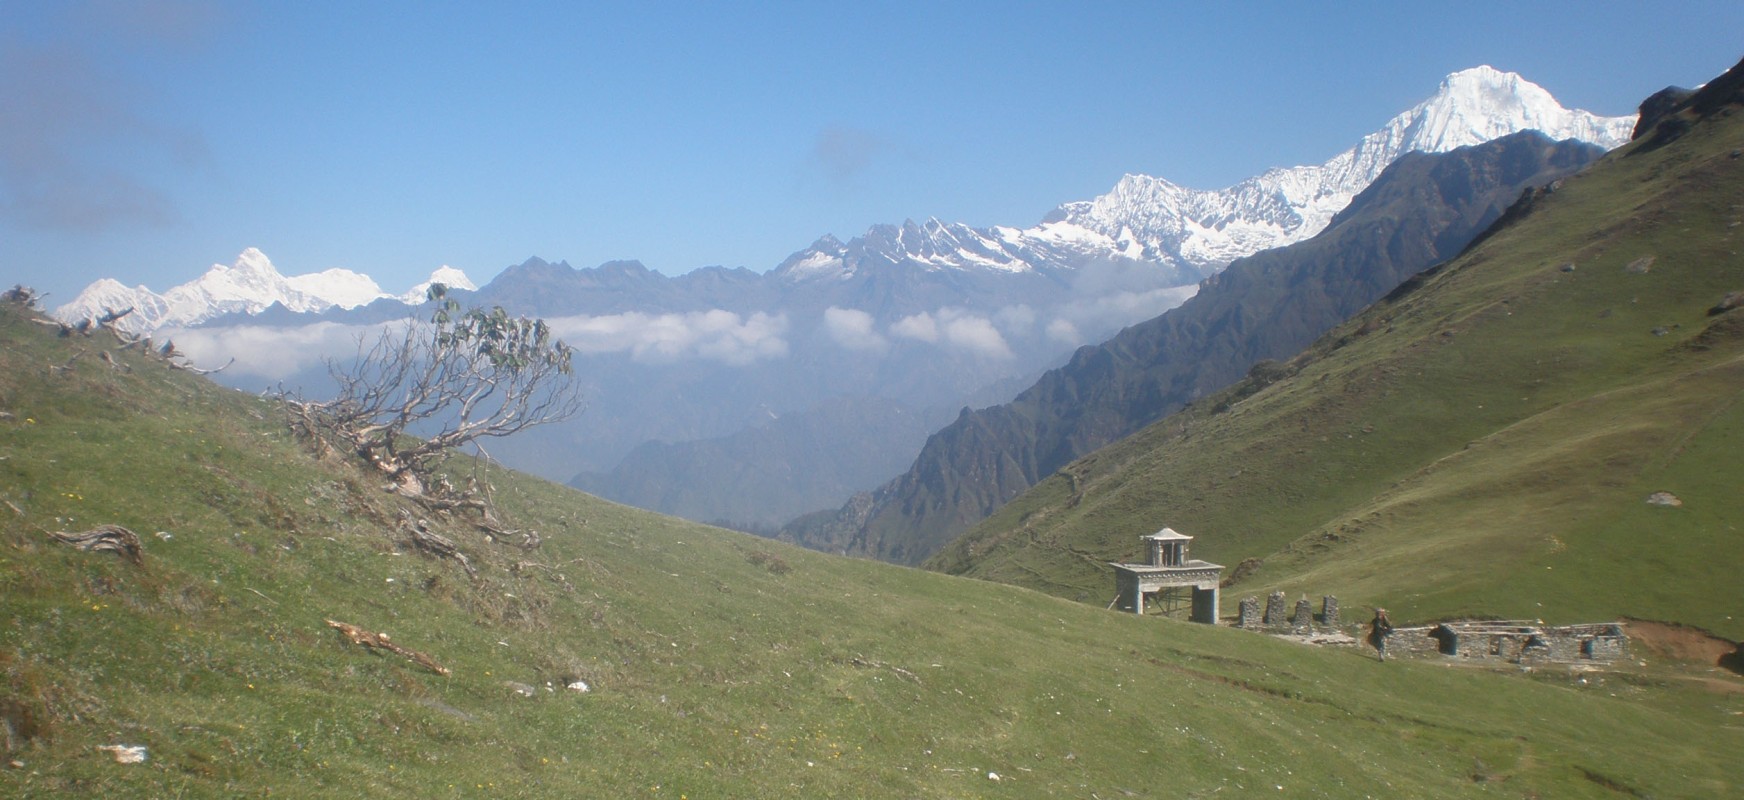  Ganesh Himal Base Camp Trek 